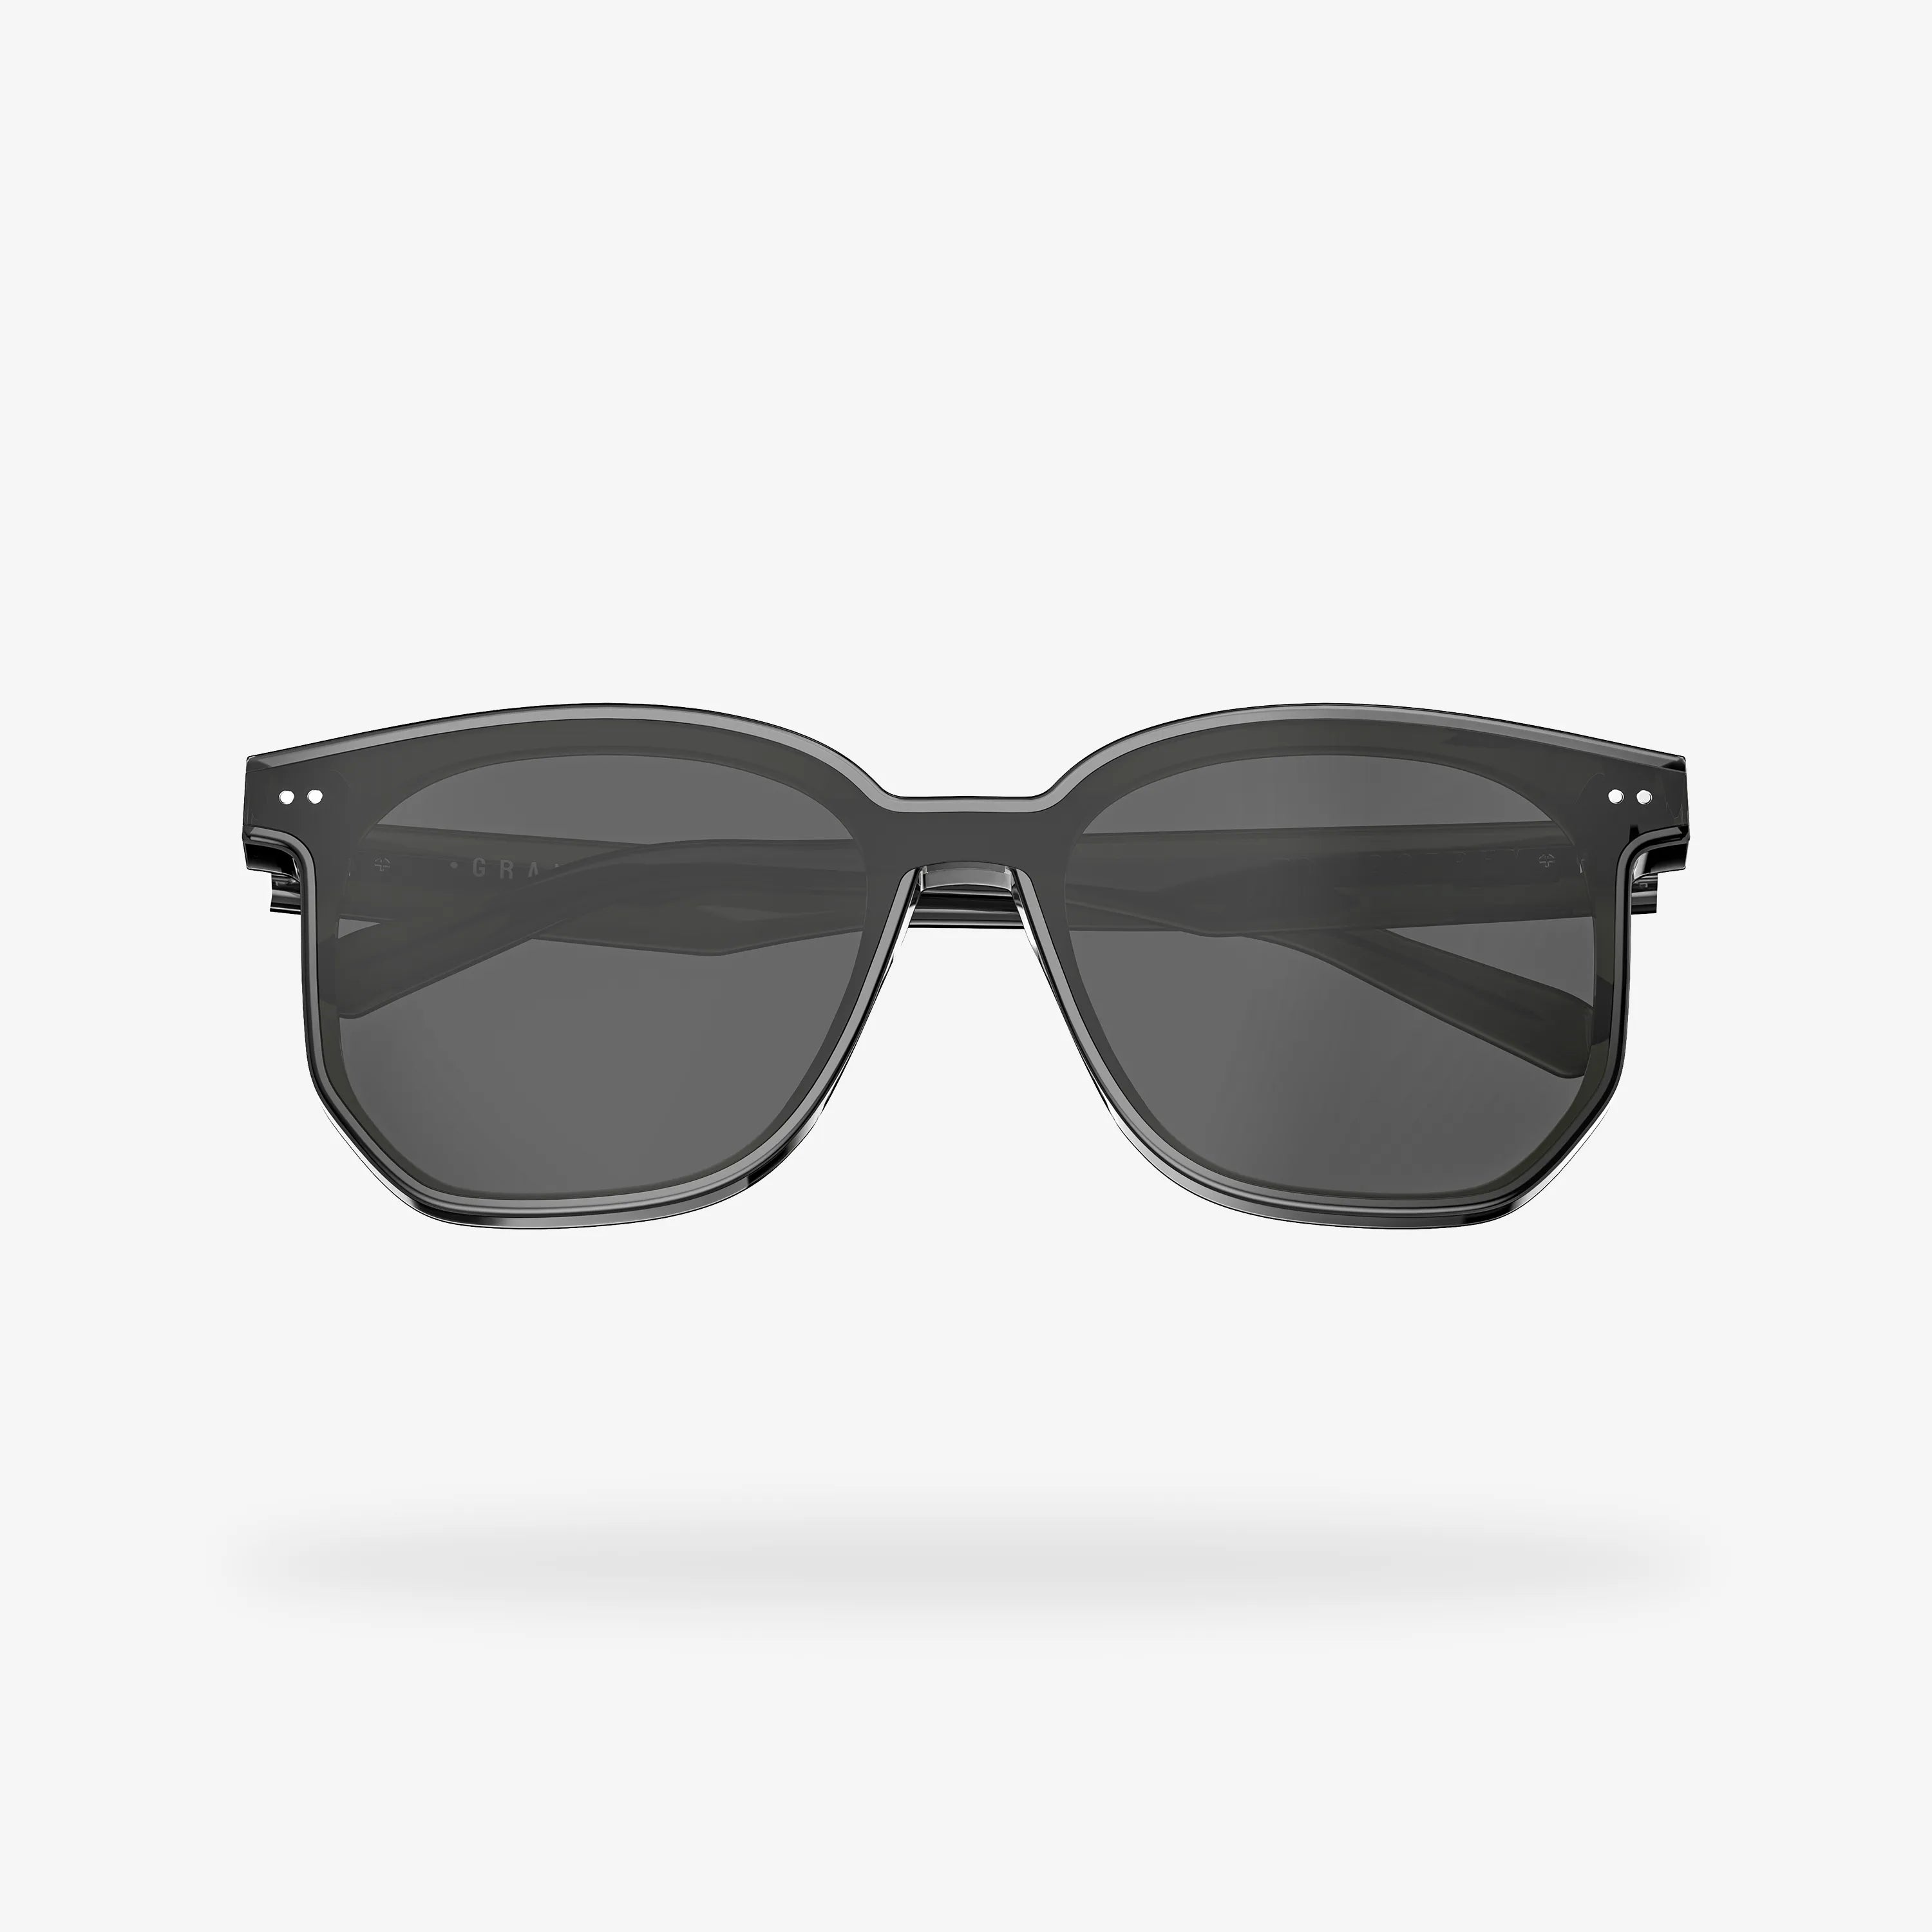 Grand Black Square Acetate Sunglasses